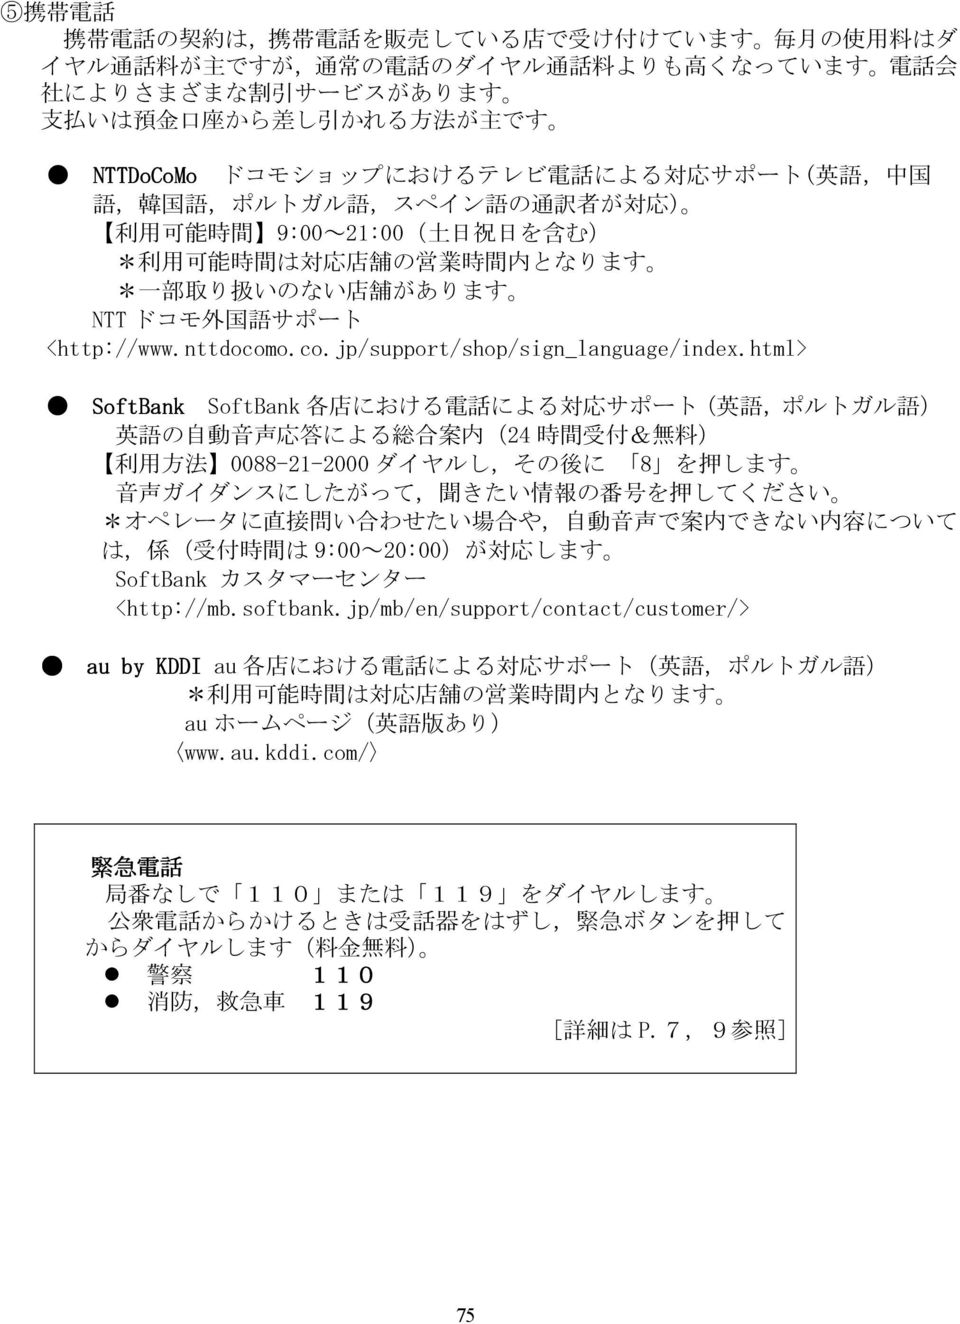 があります NTT ドコモ 外 国 語 サポート <http://www.nttdocomo.co.jp/support/shop/sign_language/index.